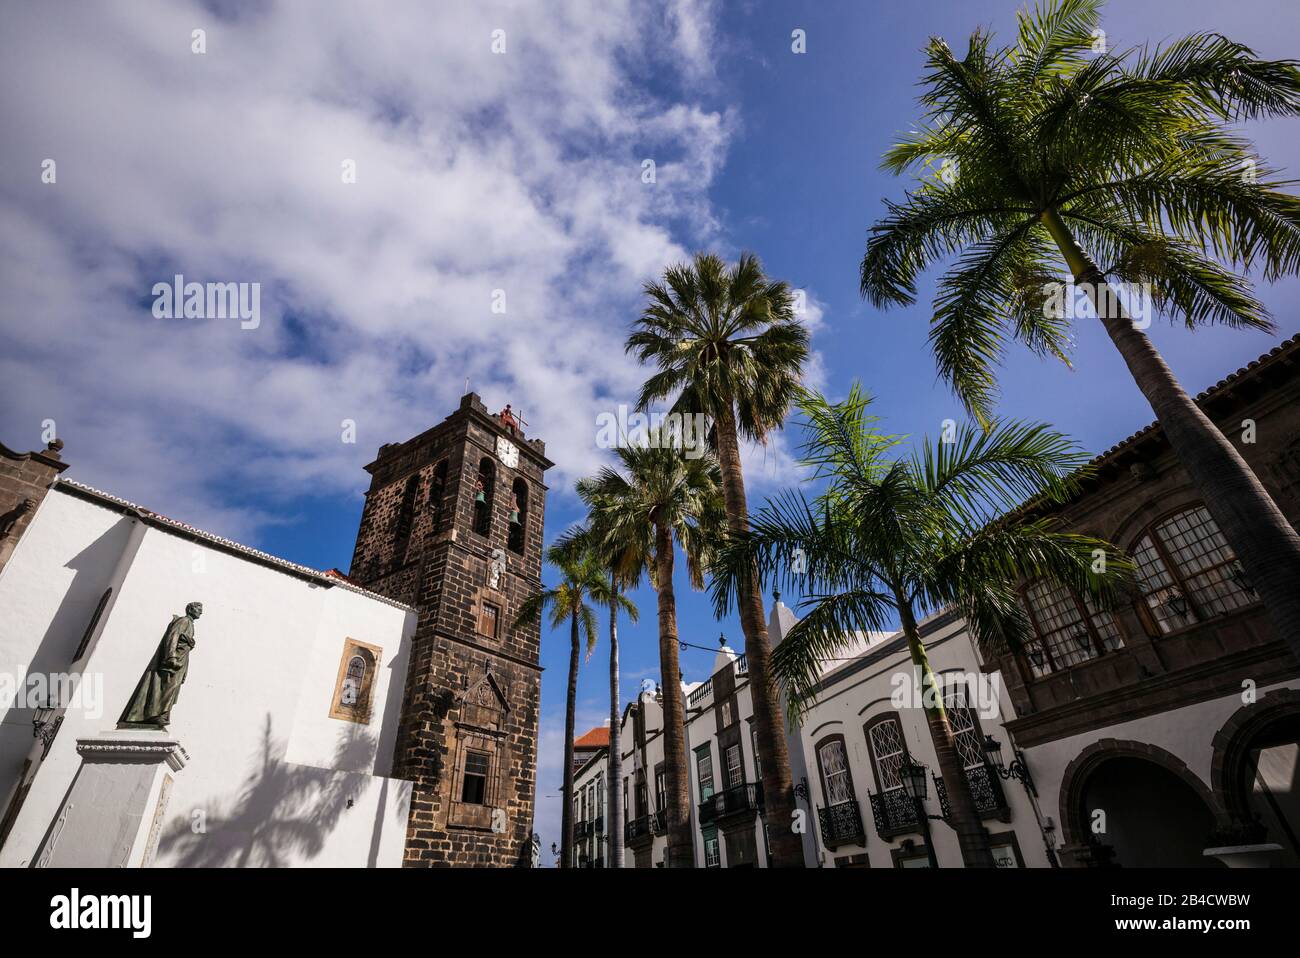 Spain, Canary Islands, La Palma Island, Santa Cruz de la Palma, Plaza Espana, Iglesia del Salvador church, exterior Stock Photo